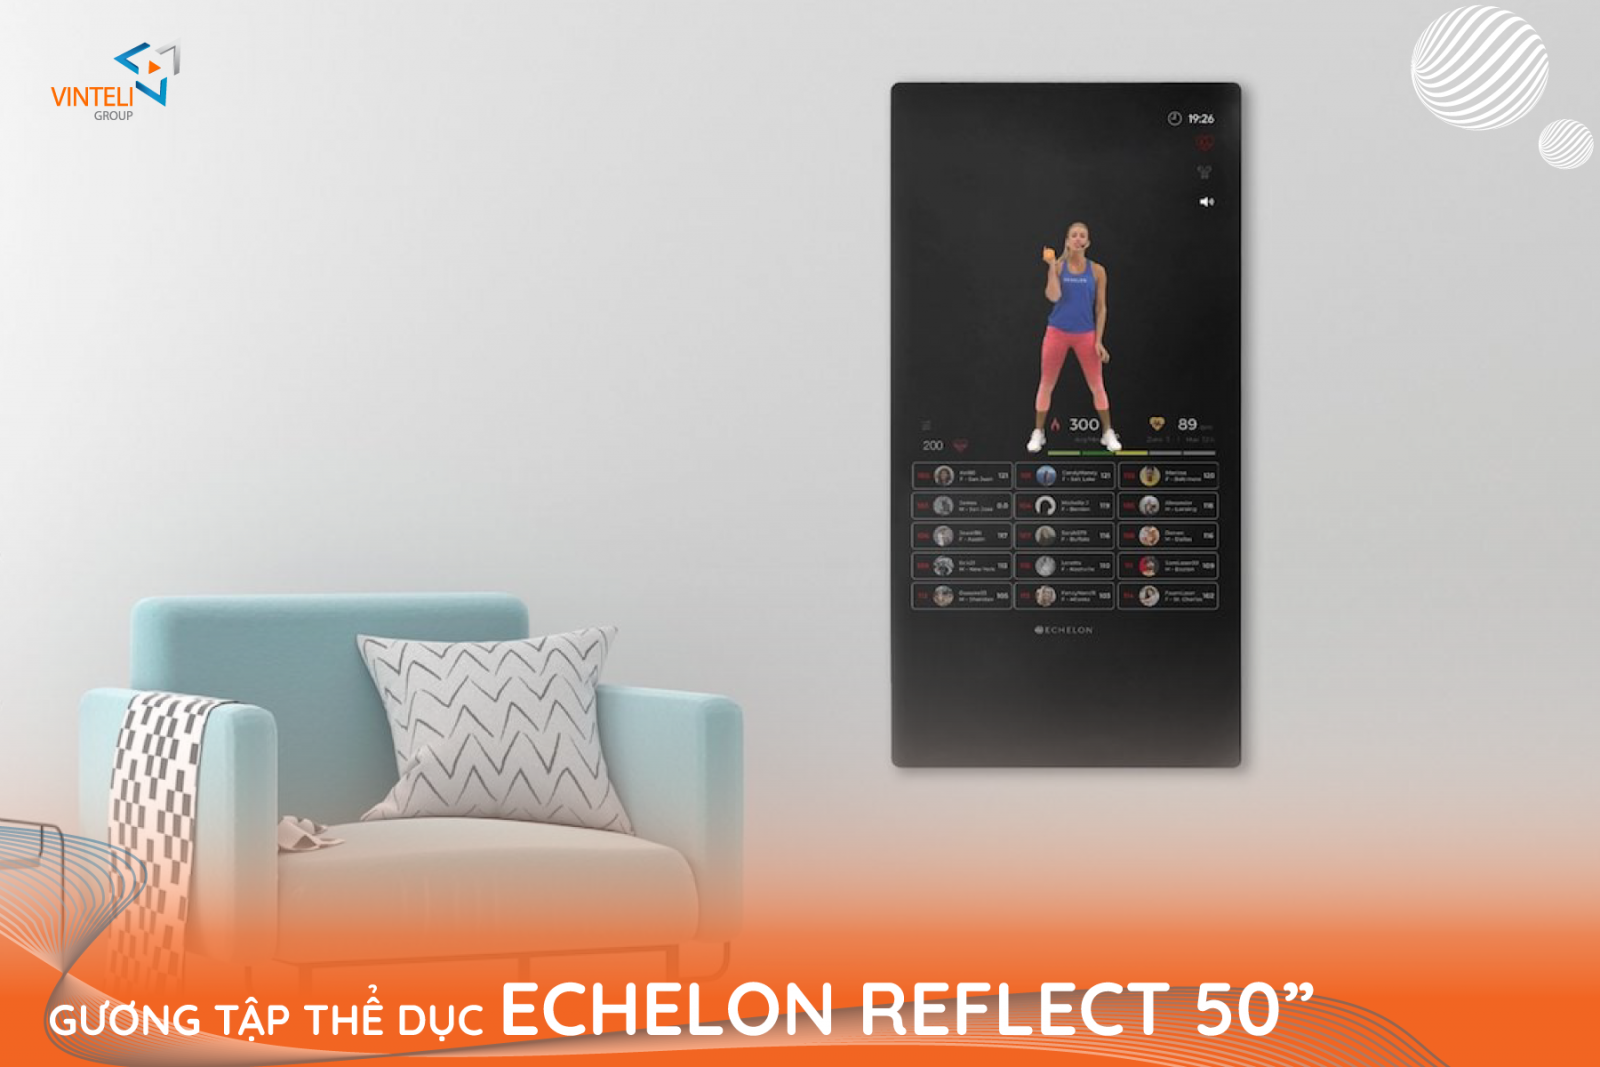 Echelon Reflect 50” mang đến cho bạn những giờ tập luyện thú vị